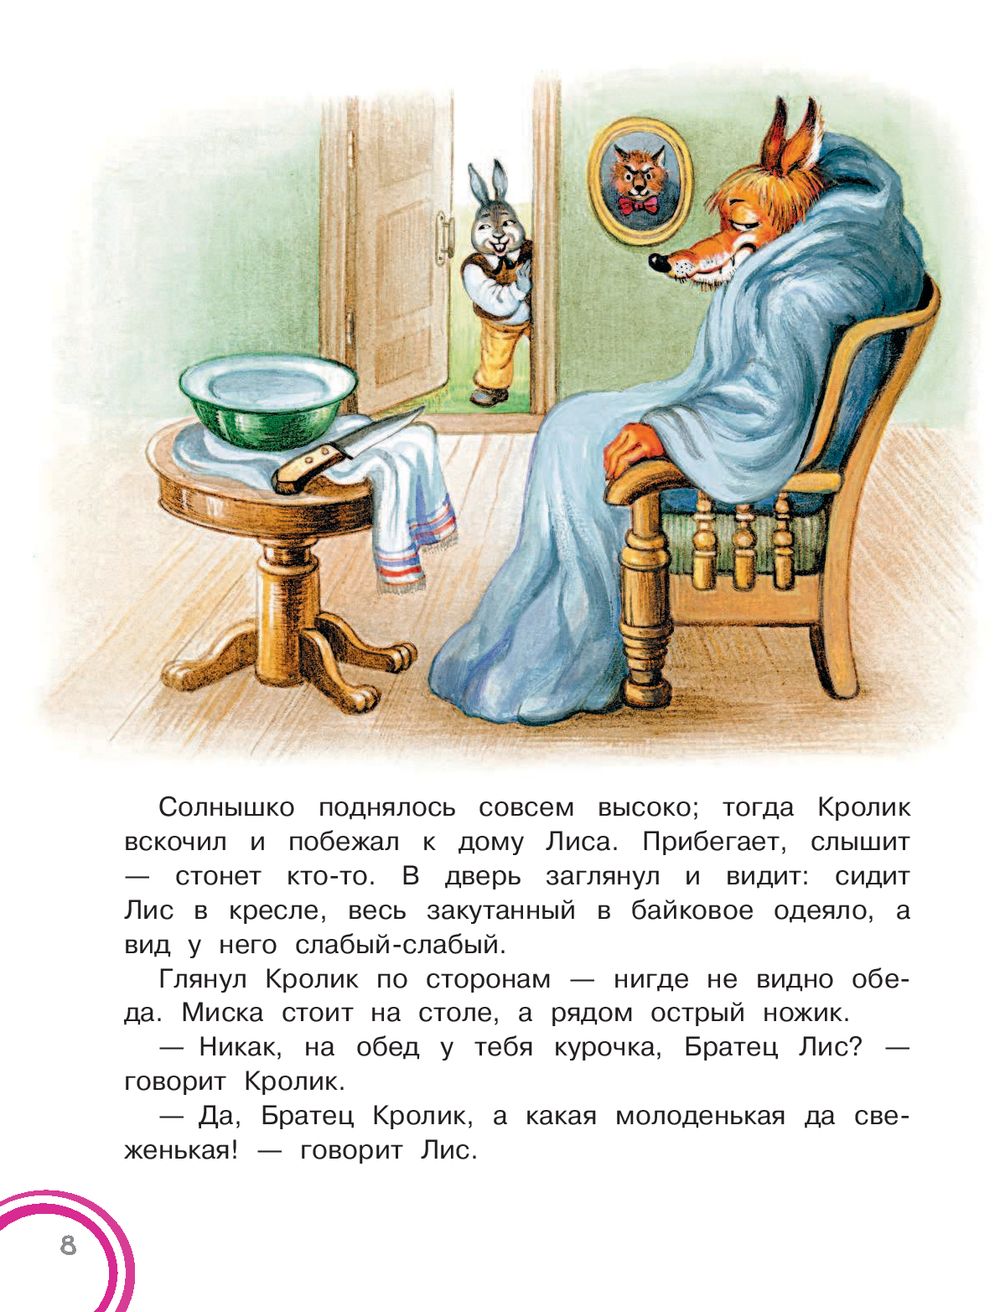 Иллюстрация к сказке братец Лис и братец кролик